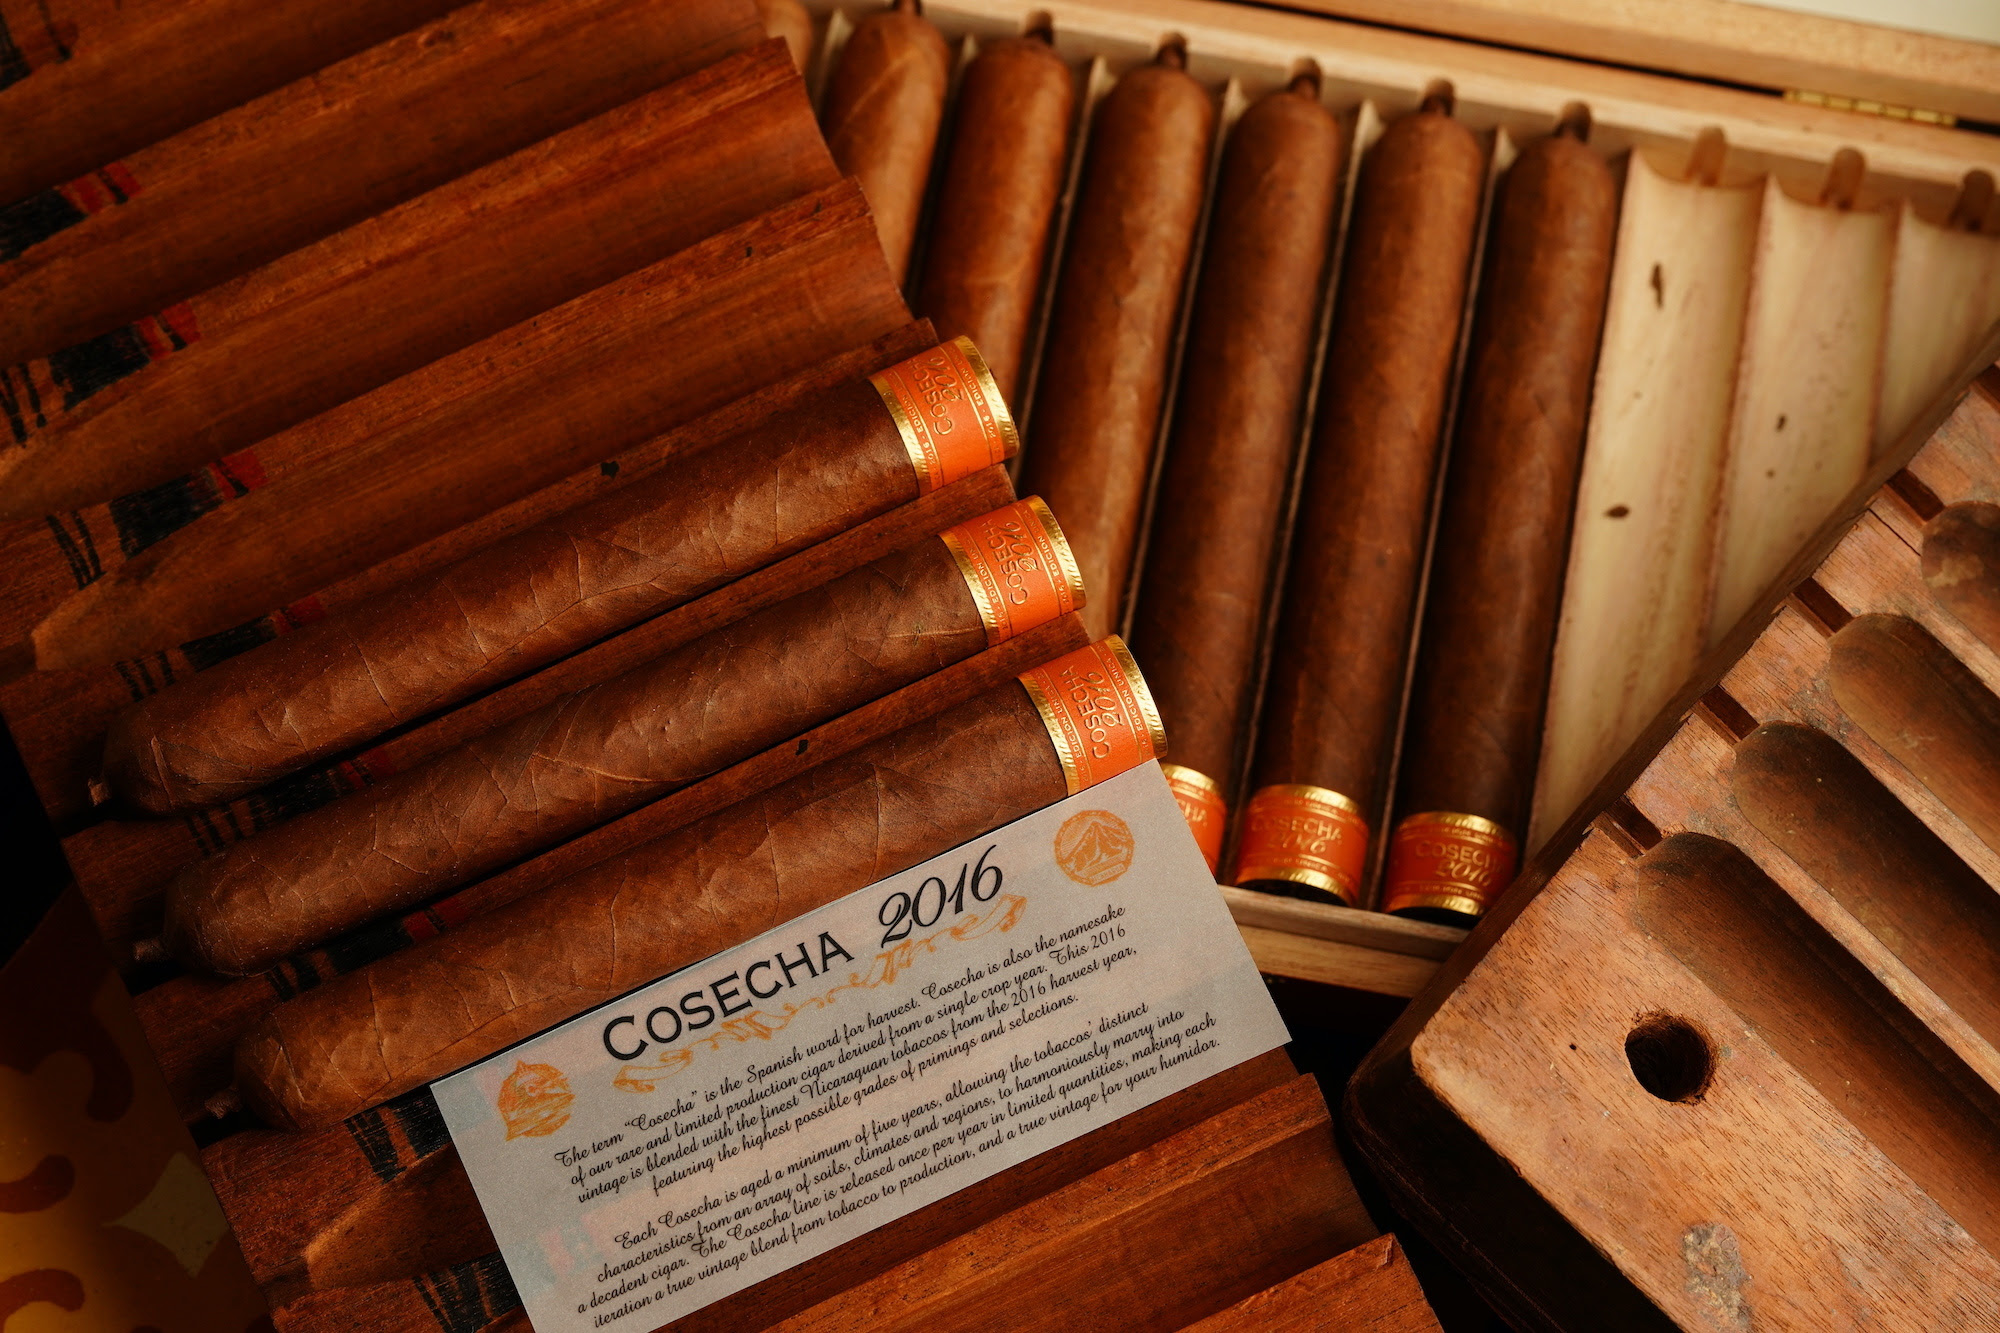 Favilli S.A. Announces Cosecha 2016 - Cigar News